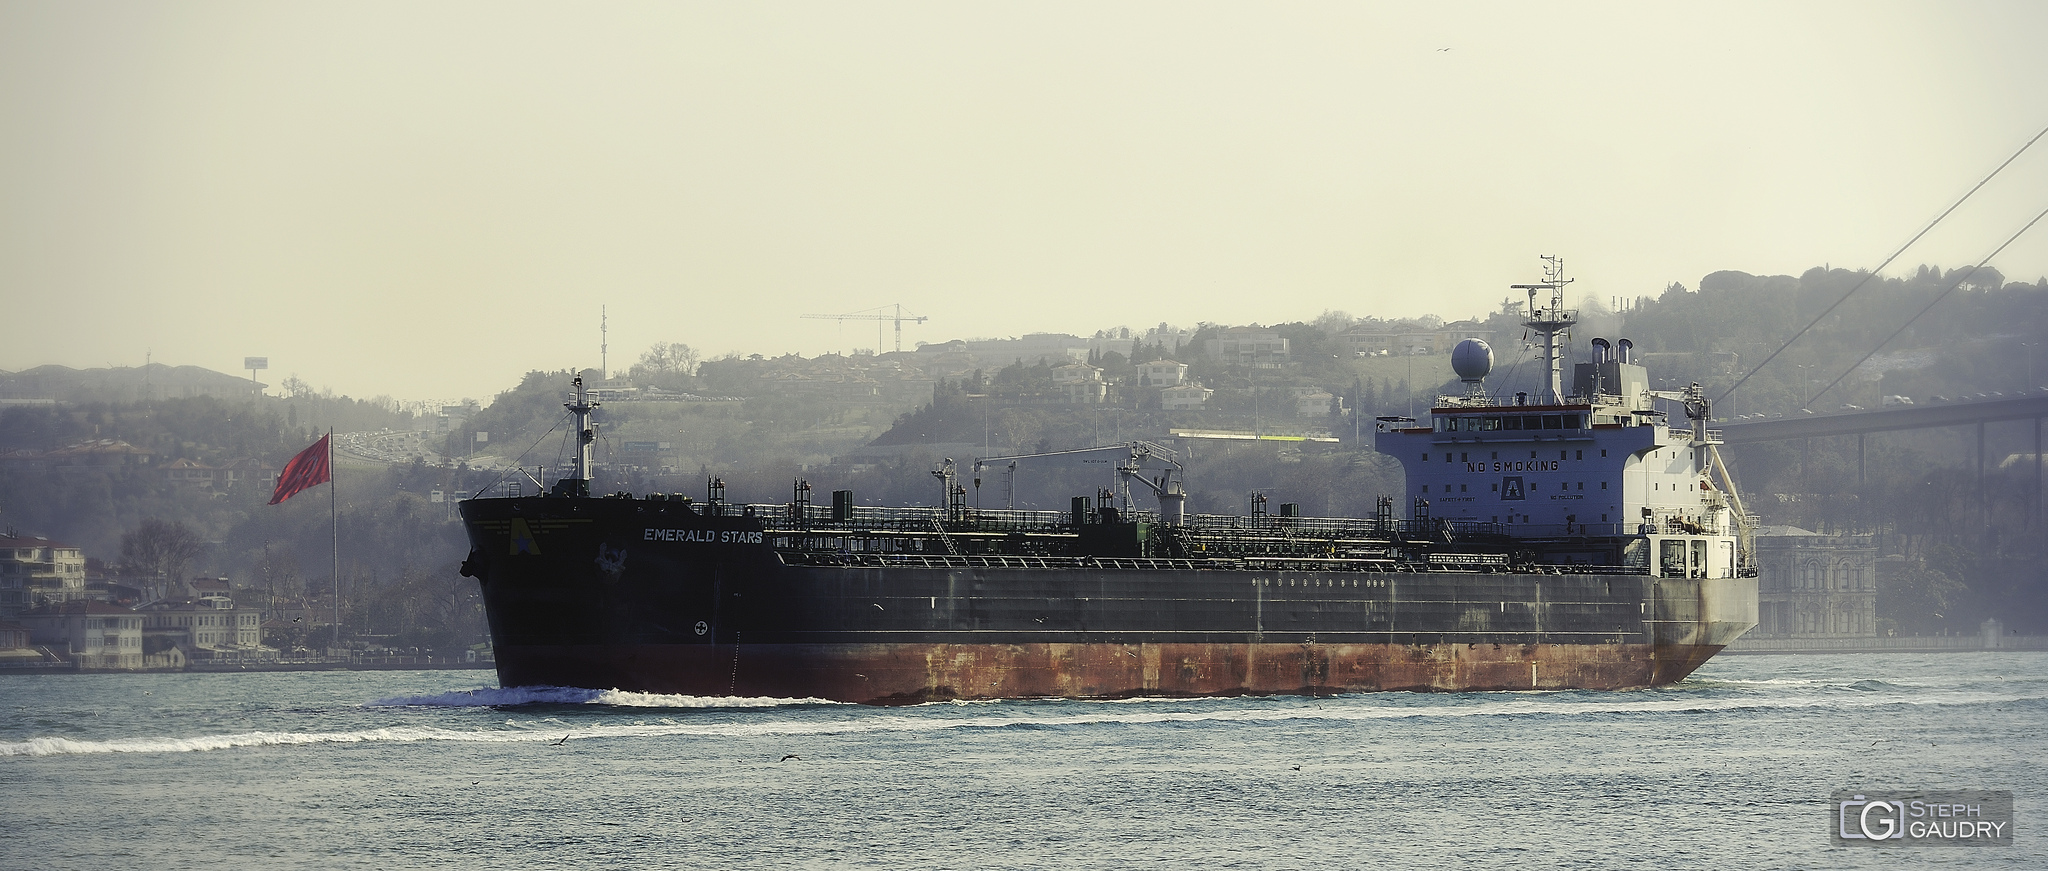 EMERALD STARS Chemical/Oil Tanker - Bosphorus near Istanbul [Click to start slideshow]